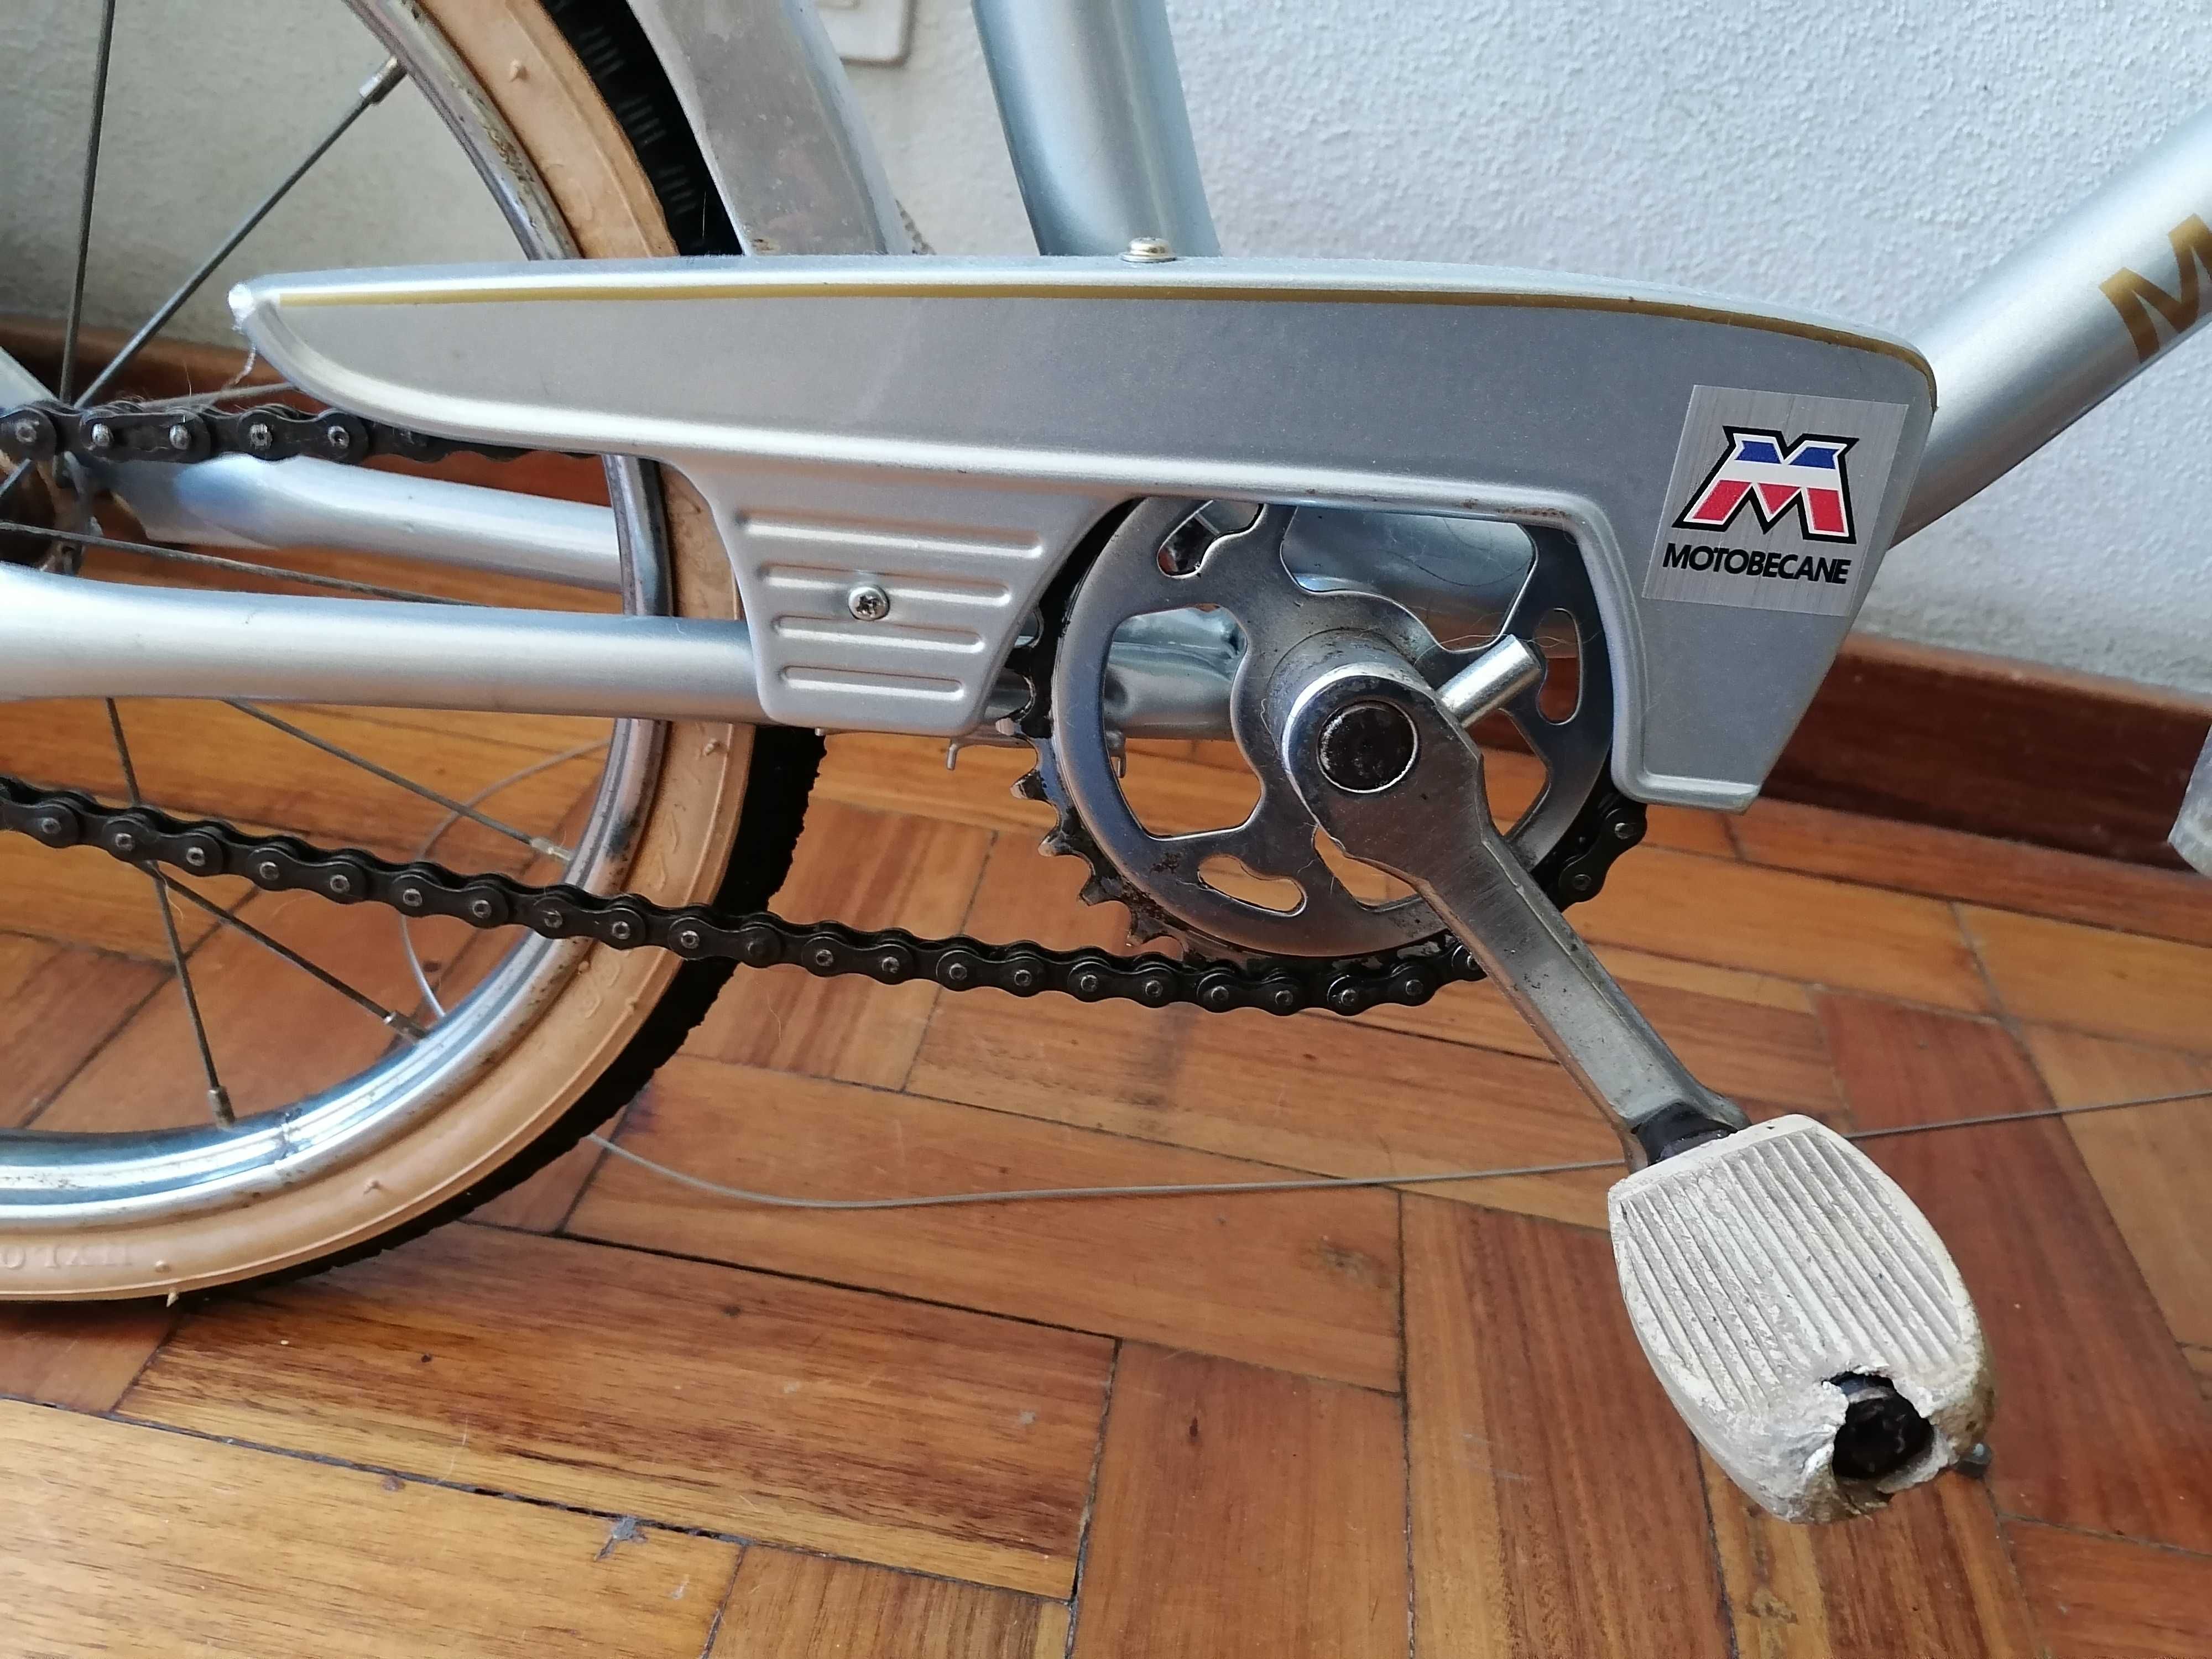 Bicicleta de criança, marca Motobecane, roda 20 dos anos 60